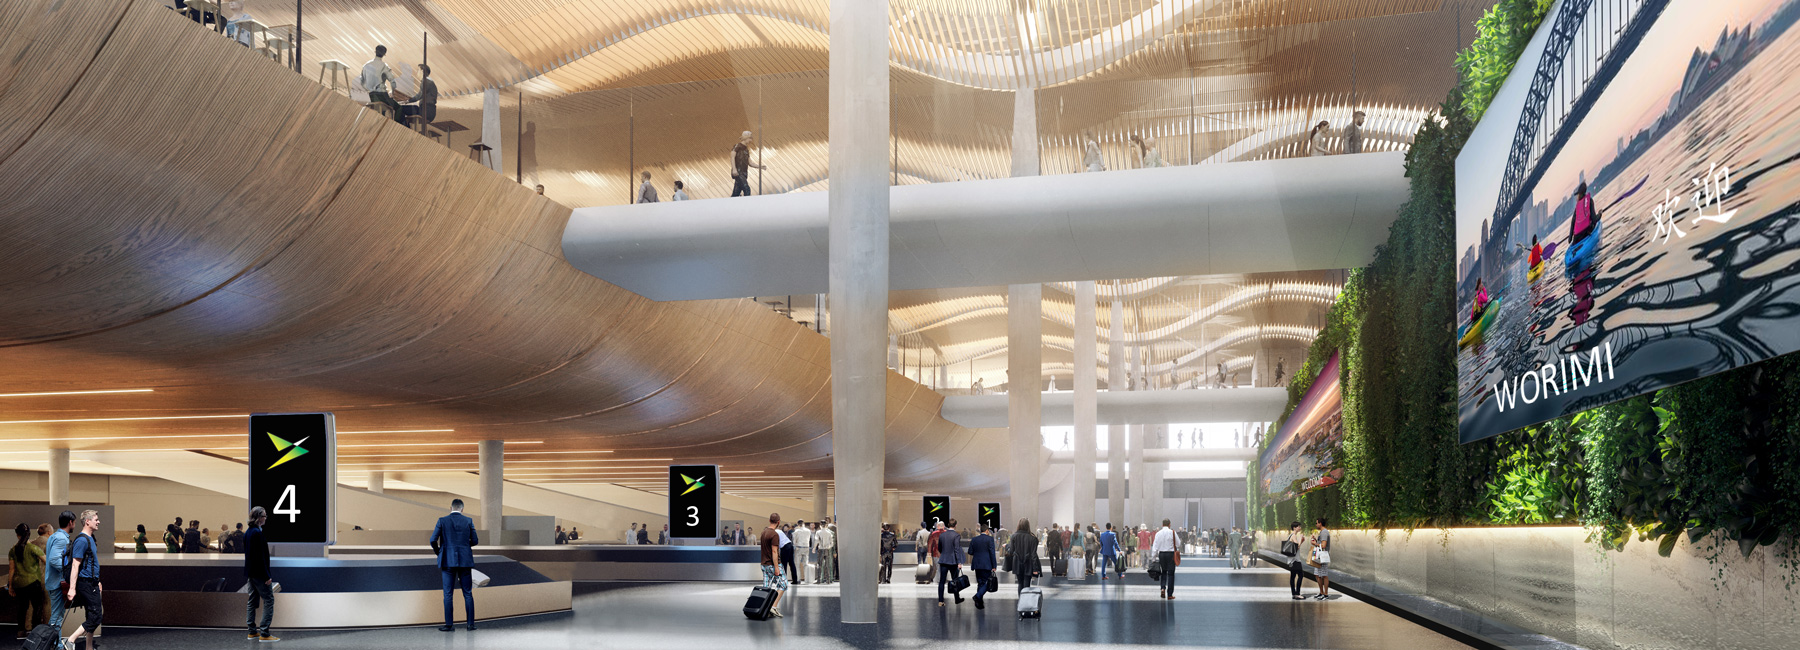 Zaha Hadid Architects Cox Architecture Win Bid To Build The New